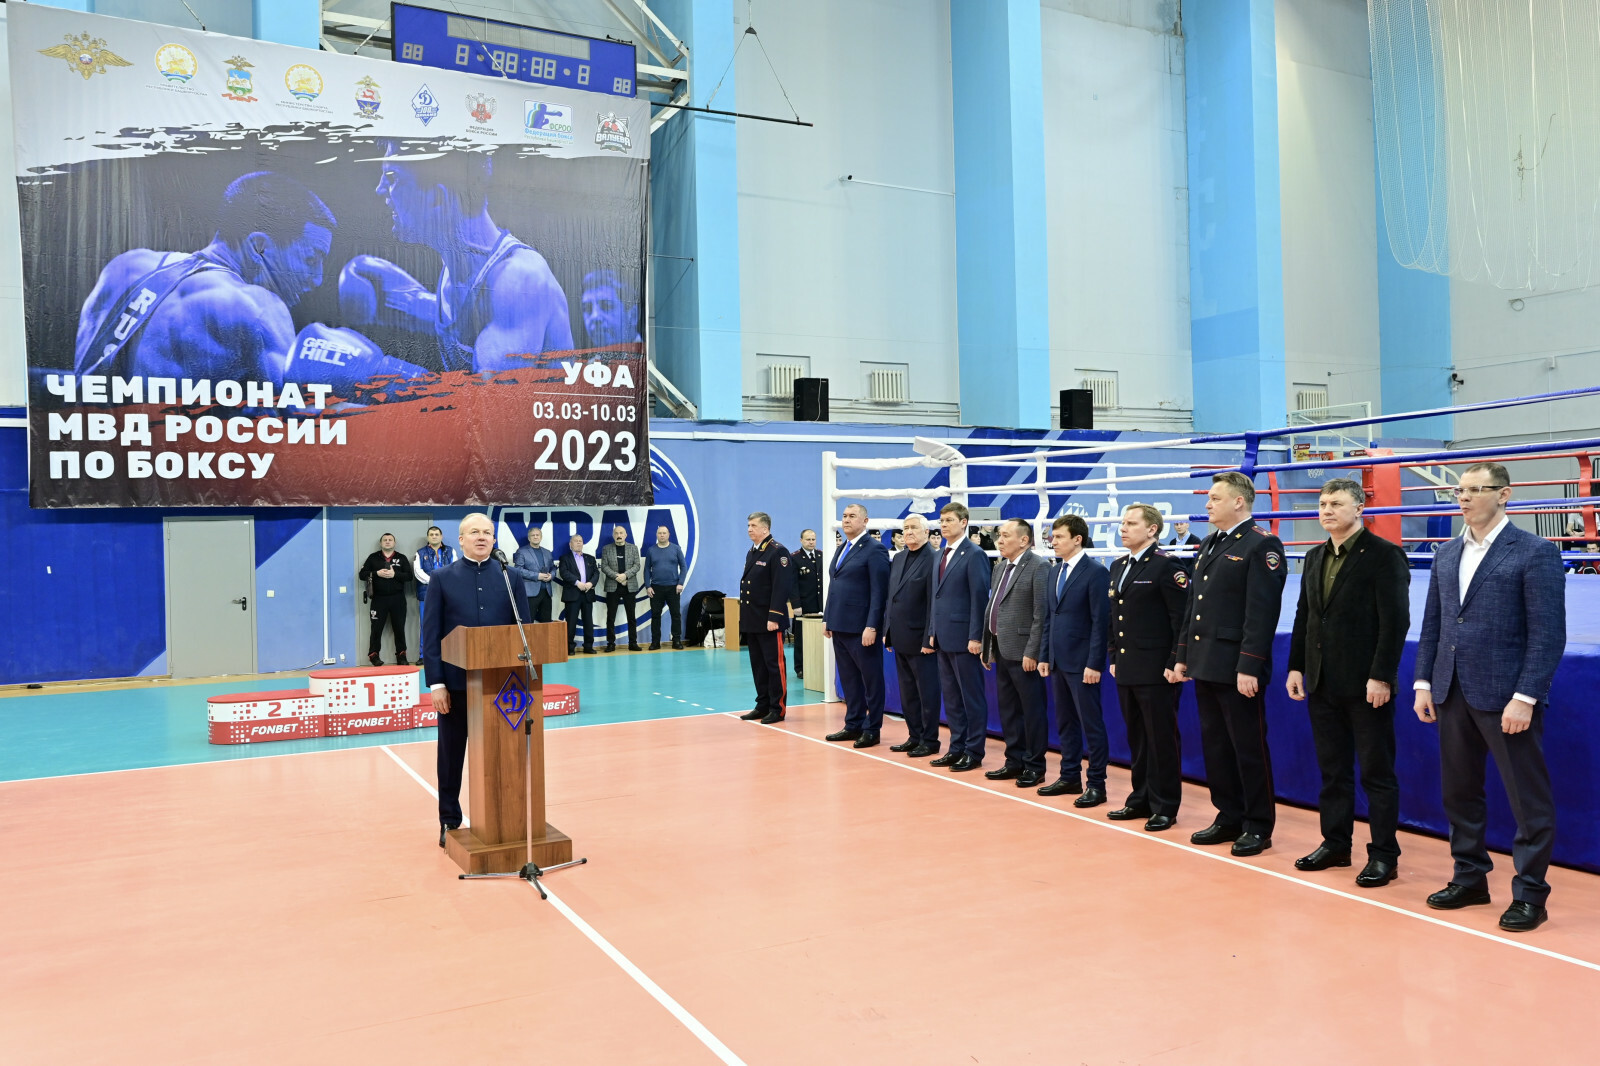 Андрей Назаров принял участие в церемонии закрытия чемпионата МВД России по боксу